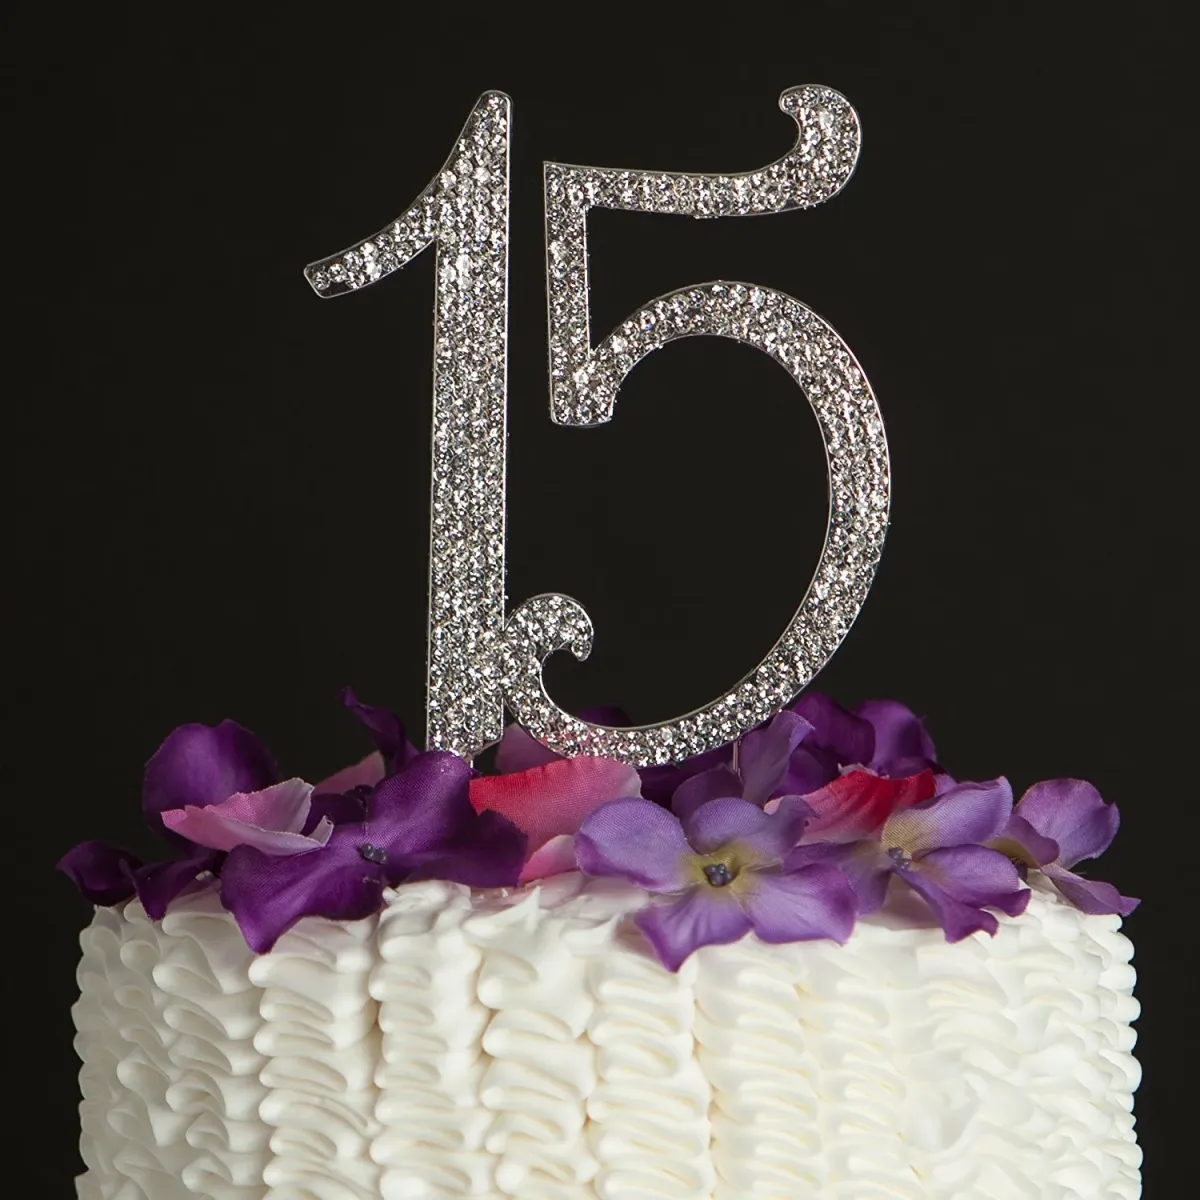 С днем рождения 15 летием для девочки. Торт на день рождения 15 лет. Тортик цифры 15. С днём рождения 15 лет девушке. Торт для девочки 15 лет на день рождения.